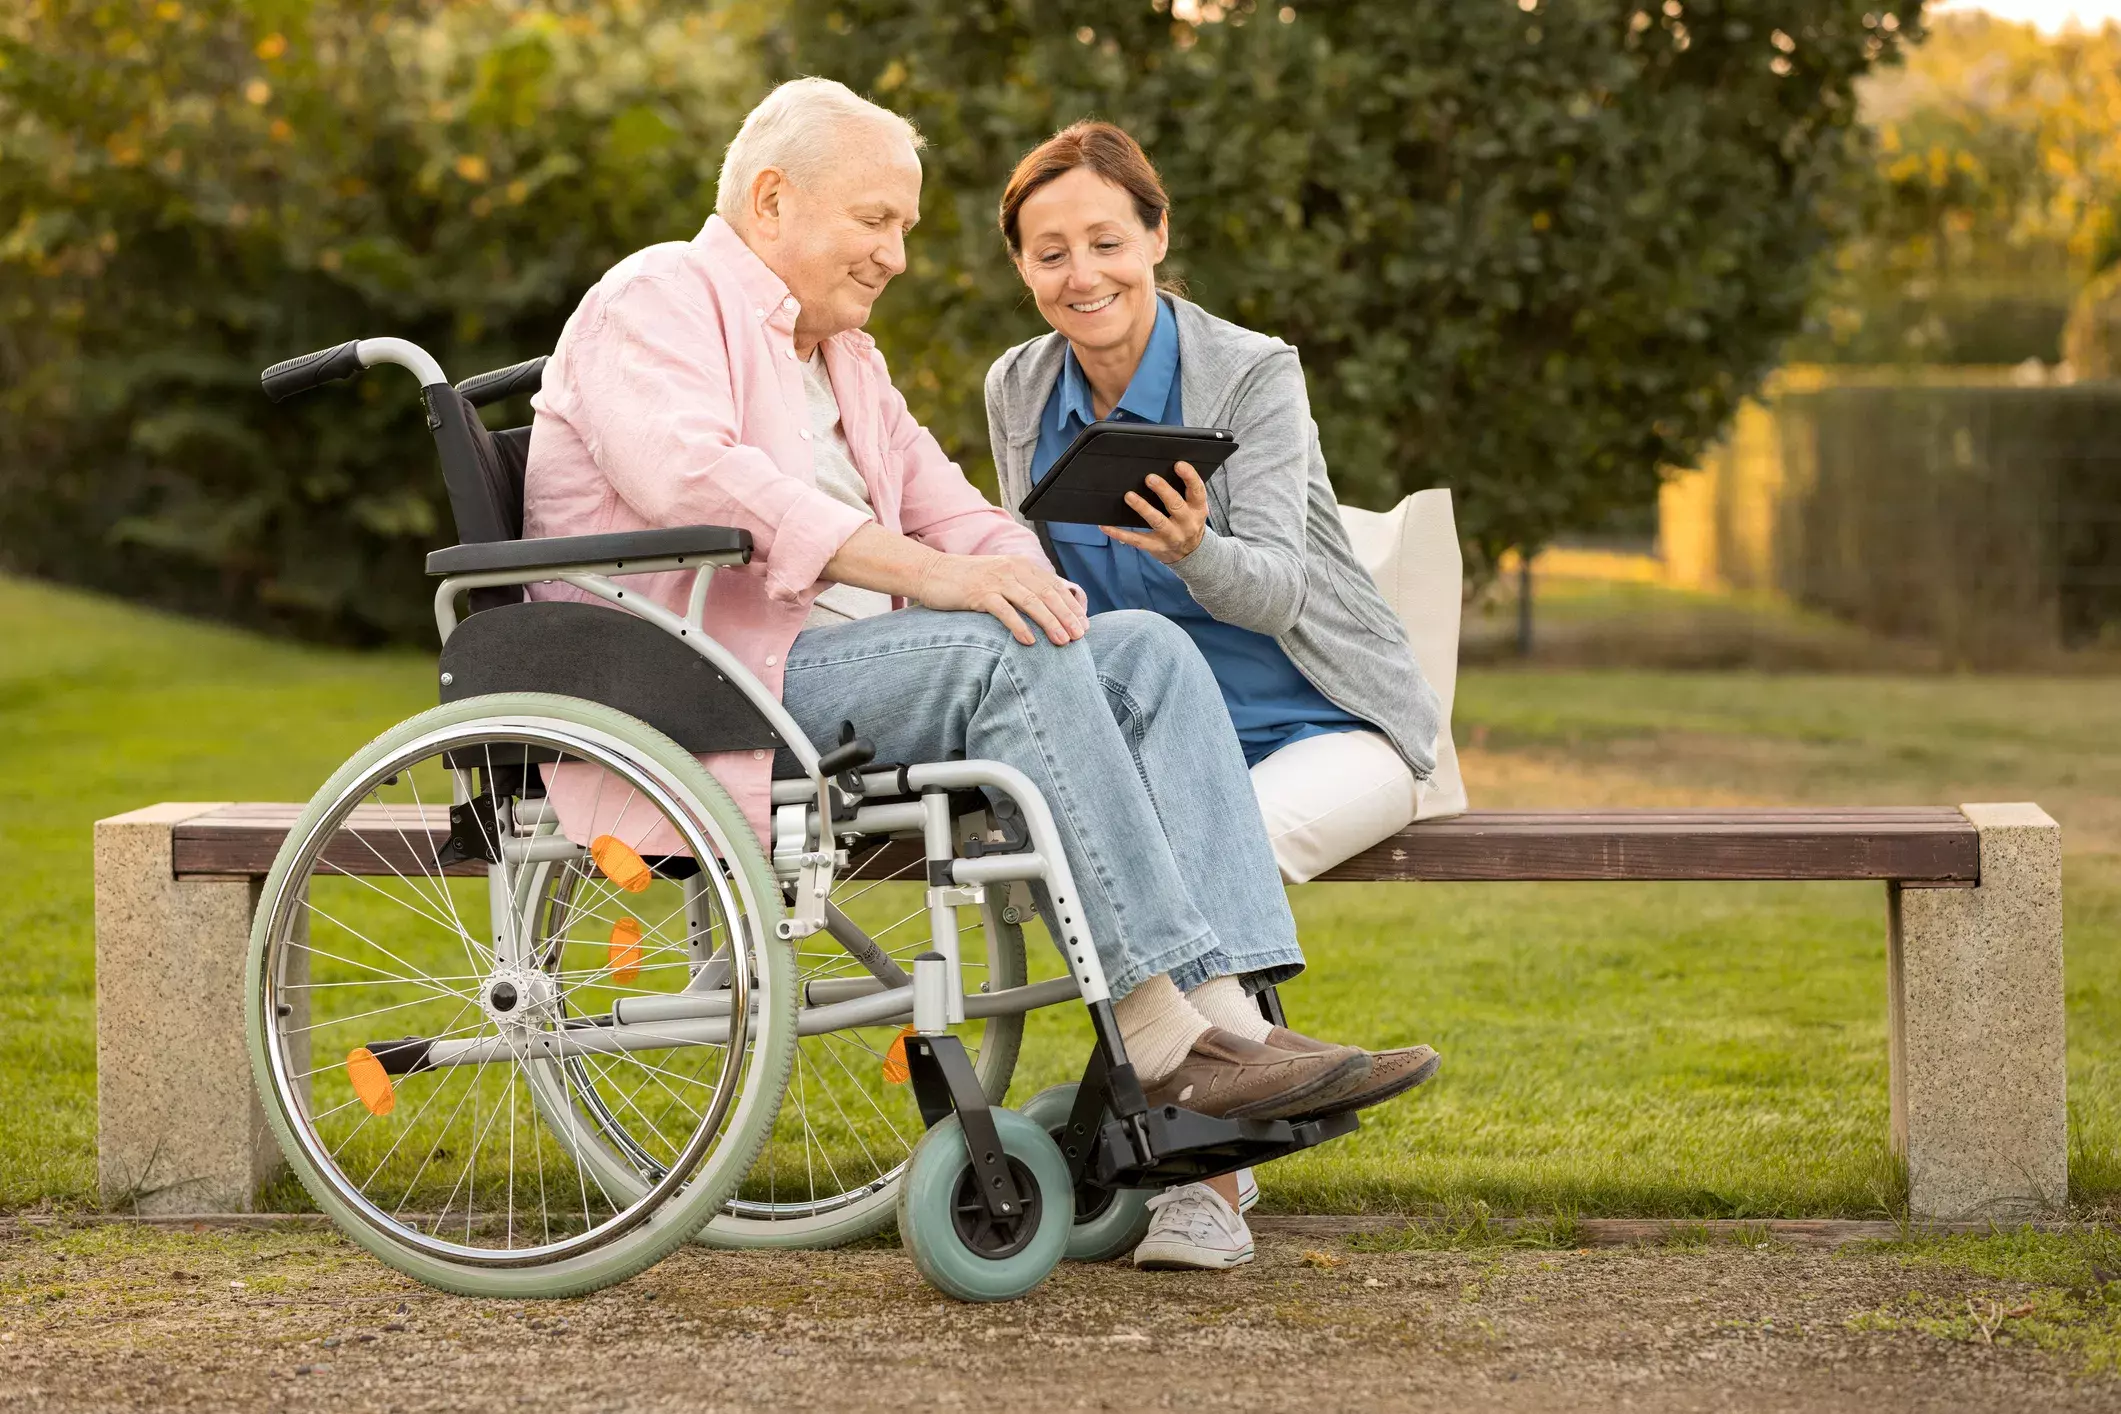 Работа ухаживать за инвалидами. Люди с ограниченными возможностями. Пожилые и инвалиды. Пенсионеры инвалидная коляска. Коляска для пенсионеров.